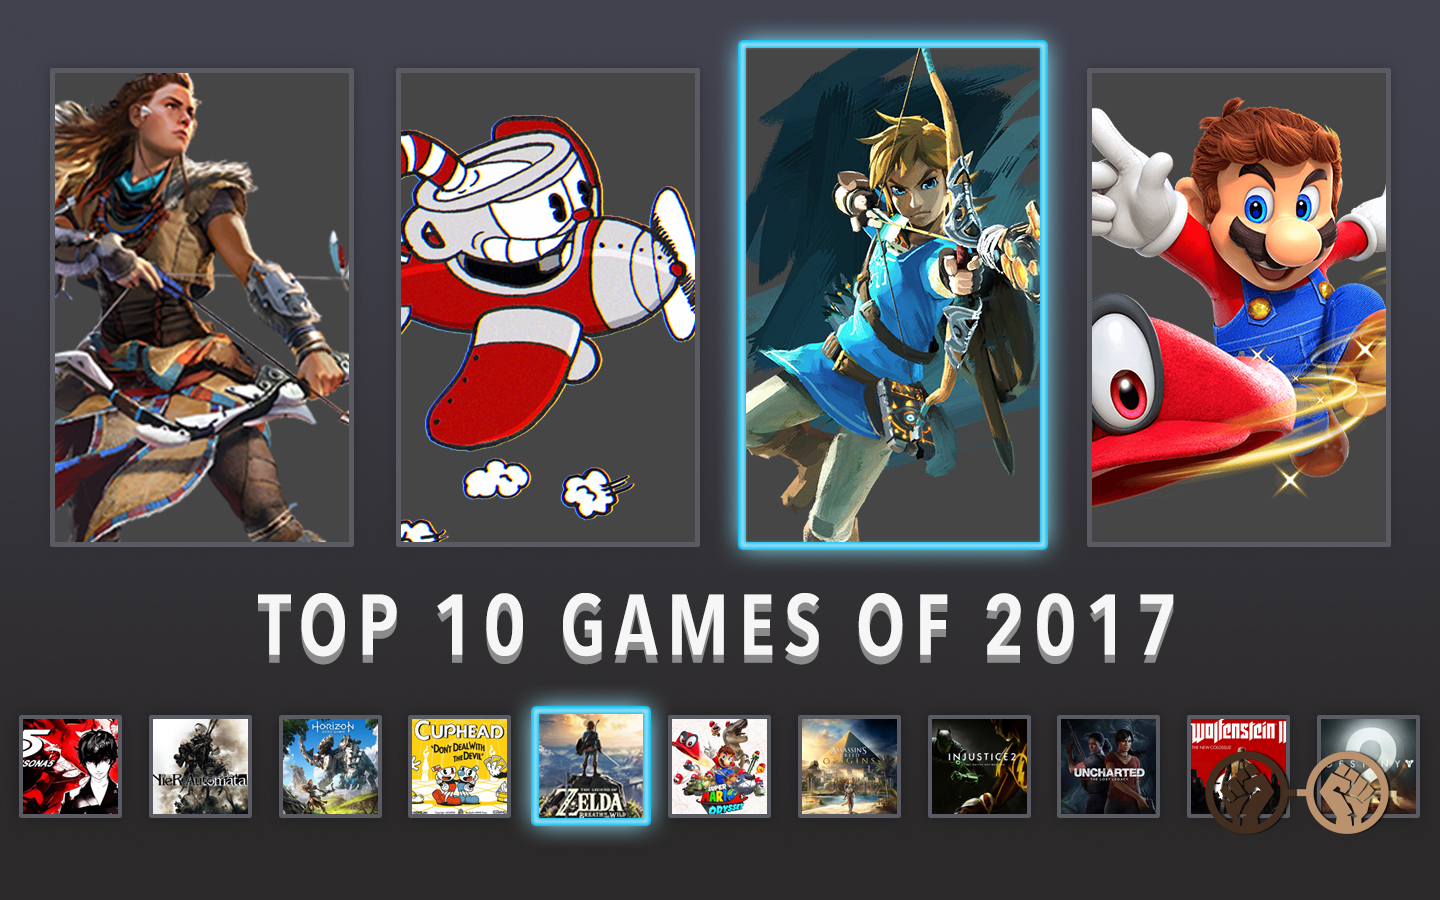 GOC’s Top 10 Games of 2017